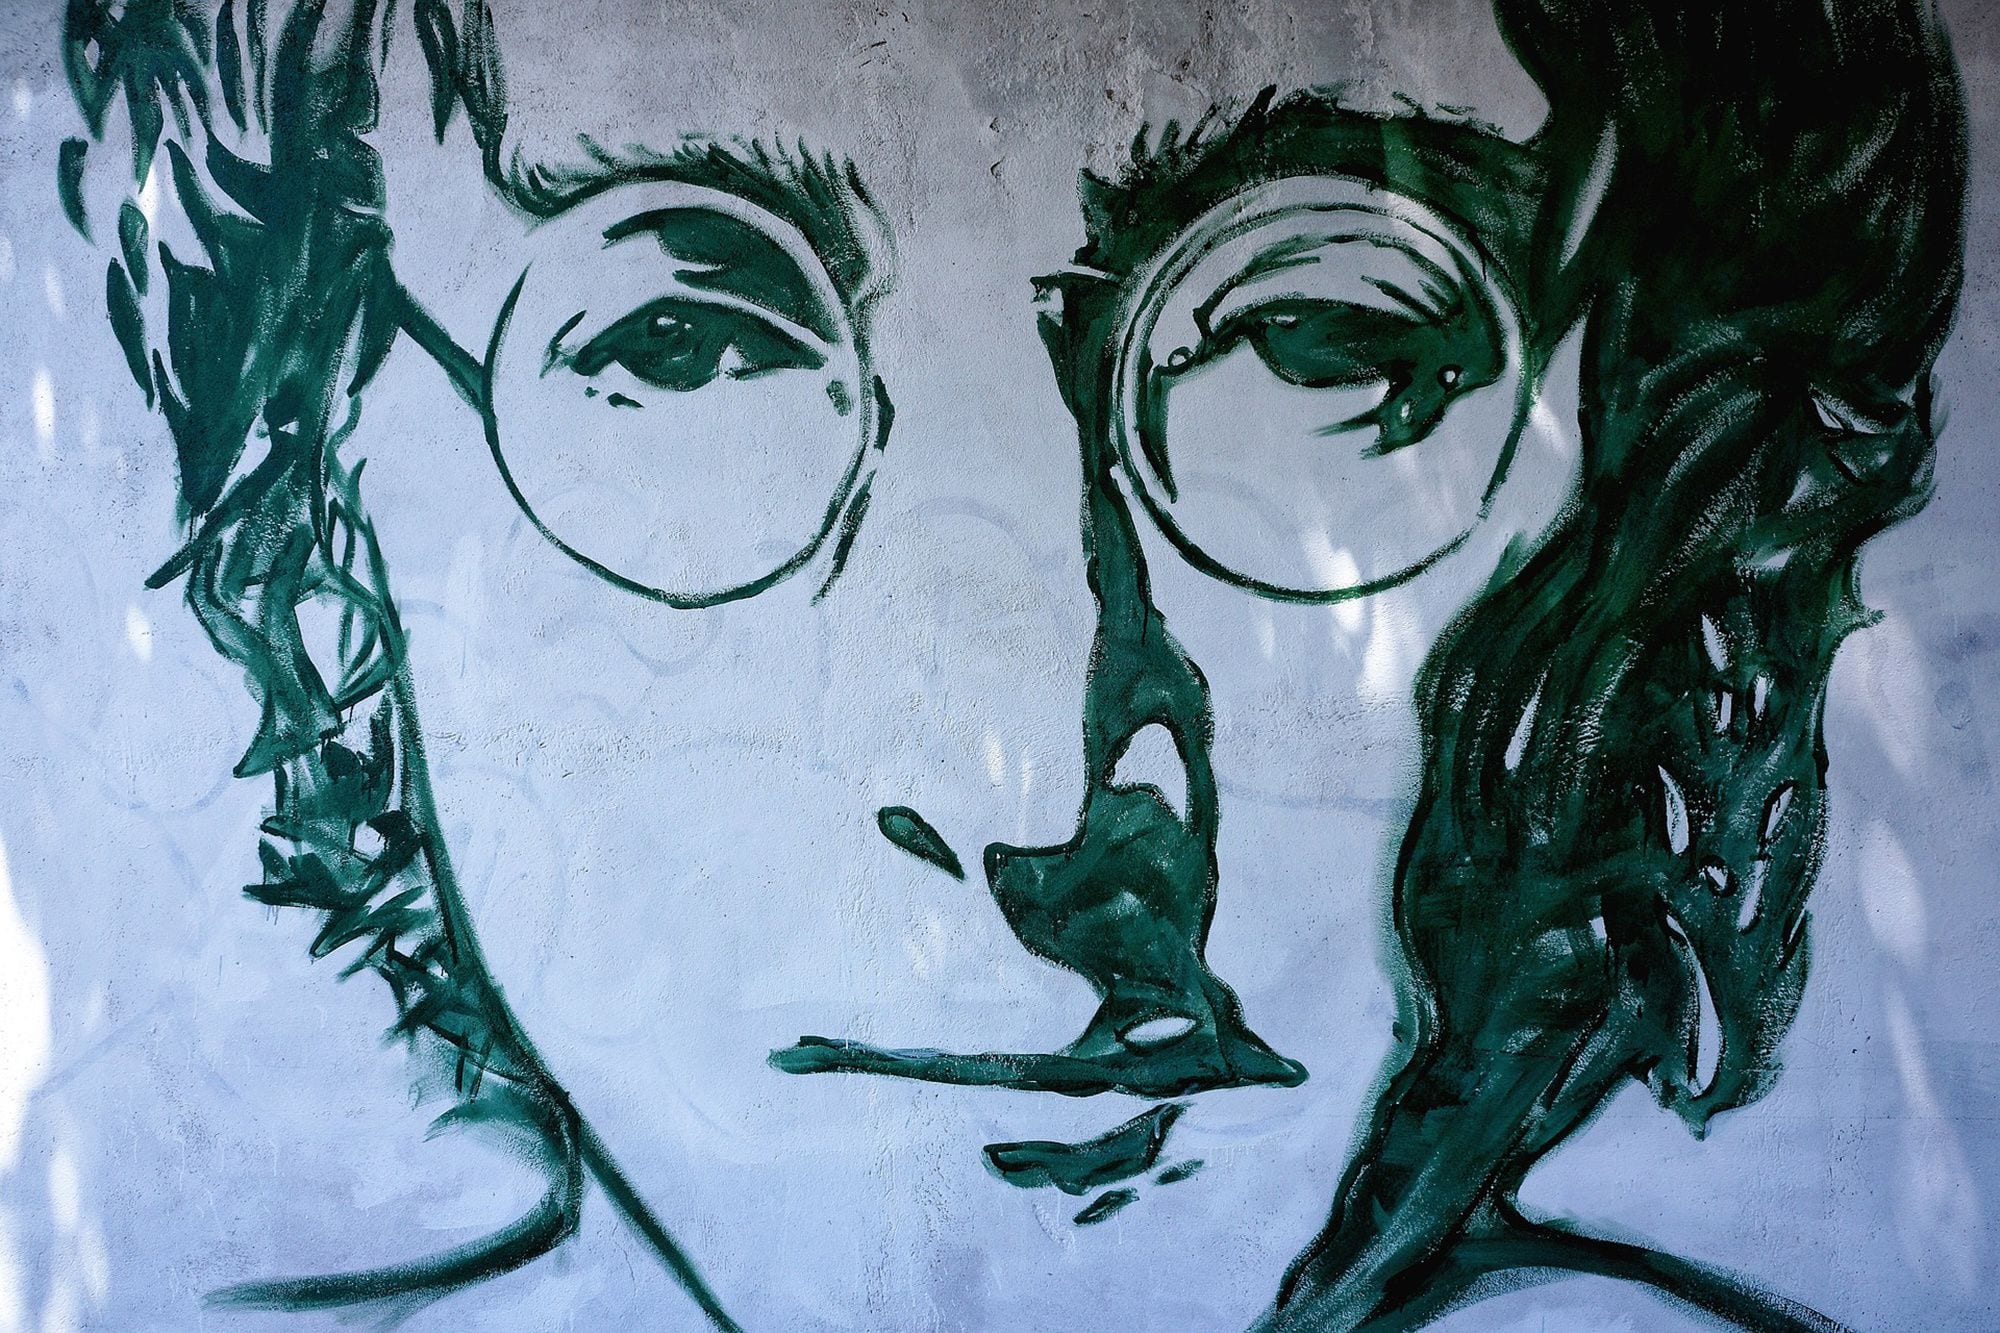 John Lennon 101: The Solo Discography